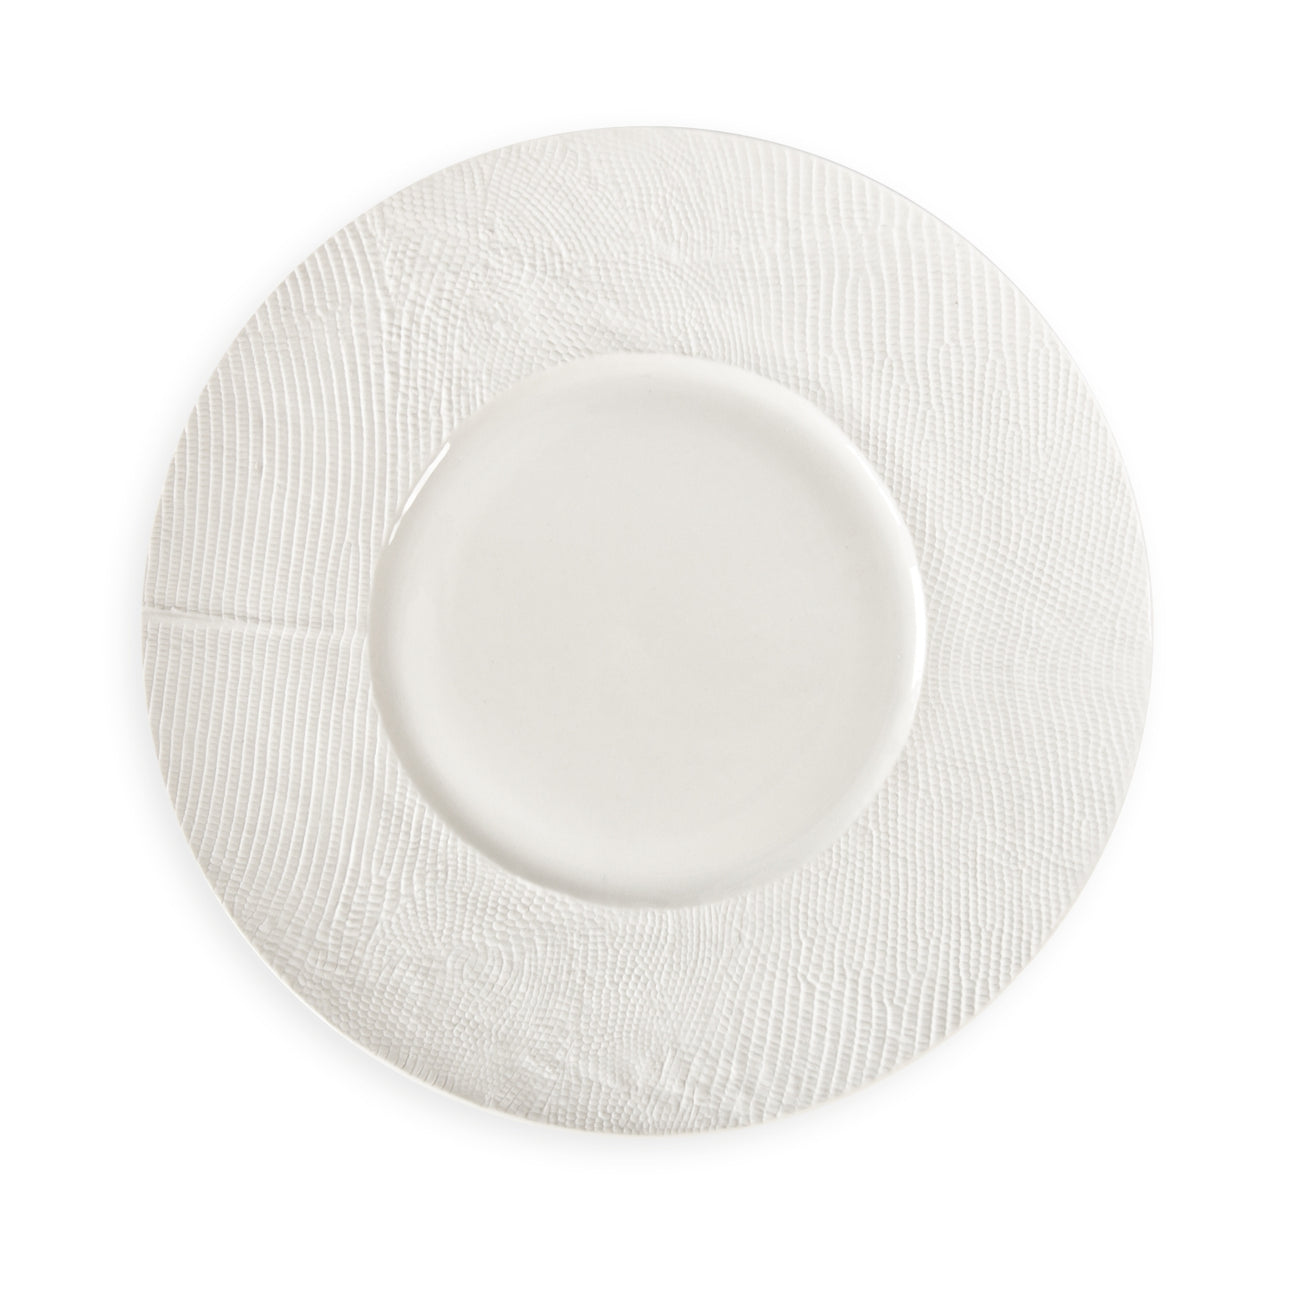 Python White Dinner Plate 